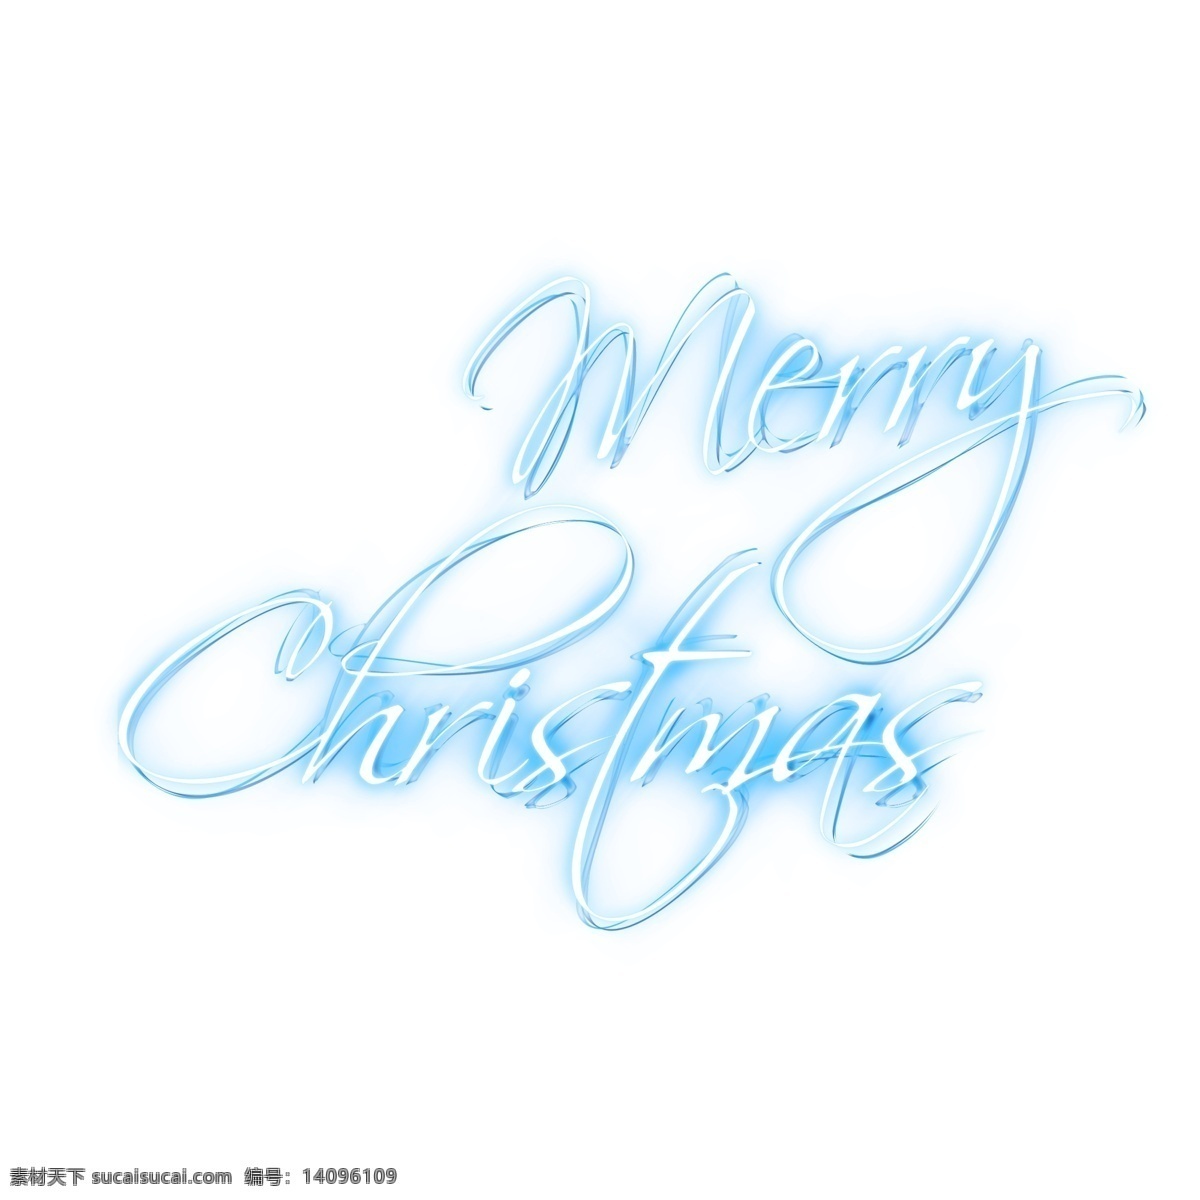 圣诞快乐 英文 蓝色 节日素材 冰霜效果 连笔字